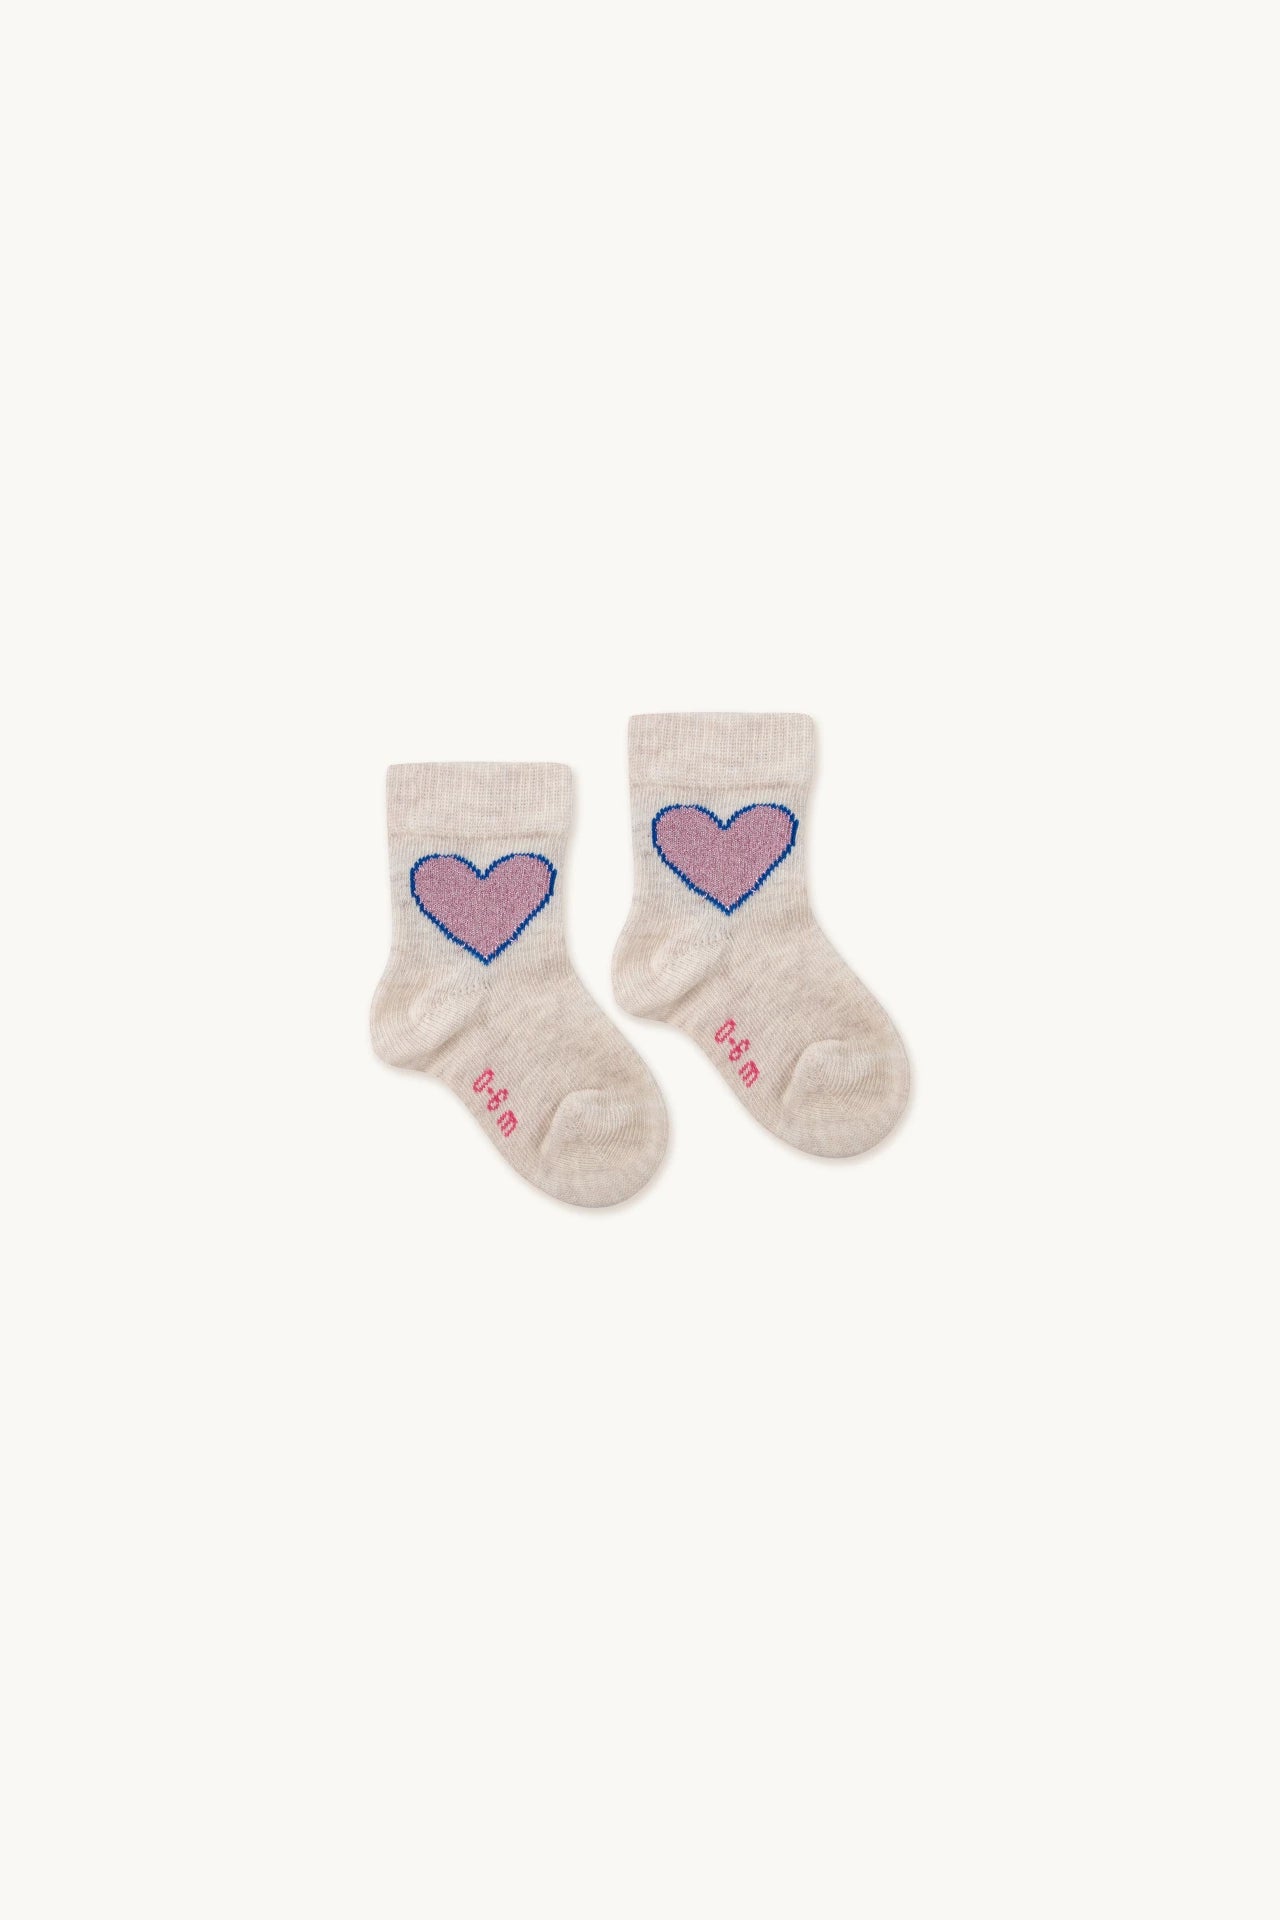 Tiny Cottons - Heart socks